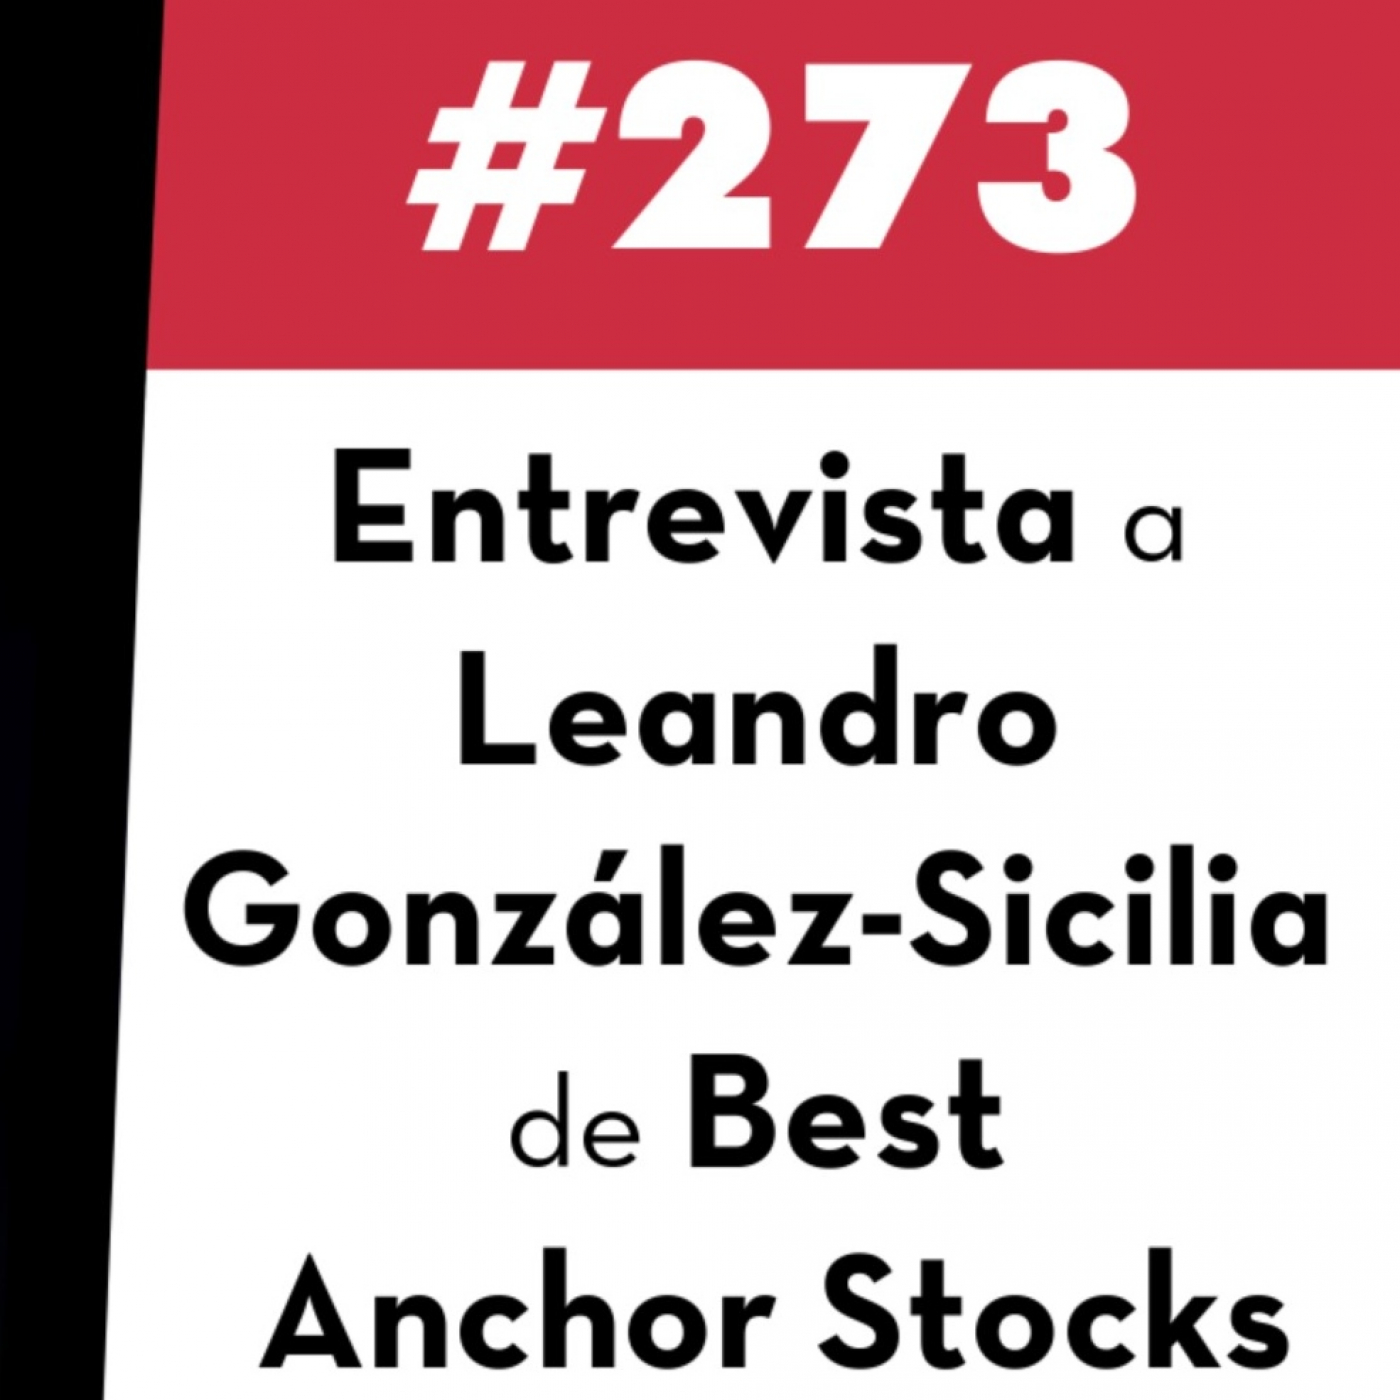 273. Entrevista a Leandro González-Sicilia de Best Anchor Stocks